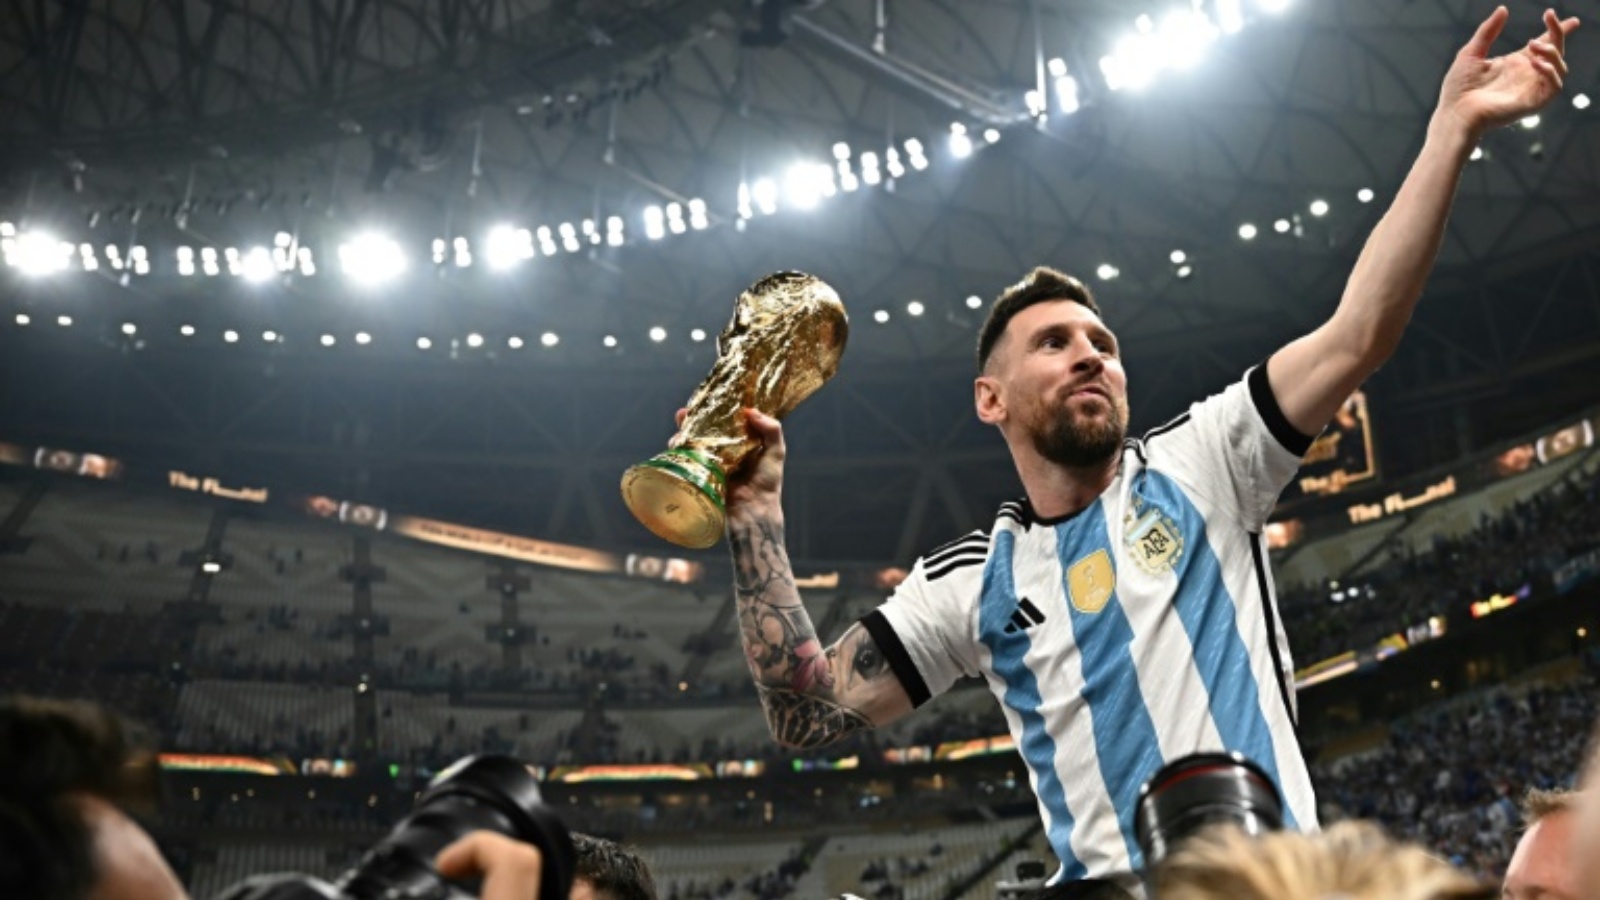 النجم الارجنتيني ليونيل ميسي يرفع كأس العالم بعد الفوز على فرنسا في نهائي مونديال قطر. لوسيل، شمال الدوحة، في 18 ديسمبر 2023